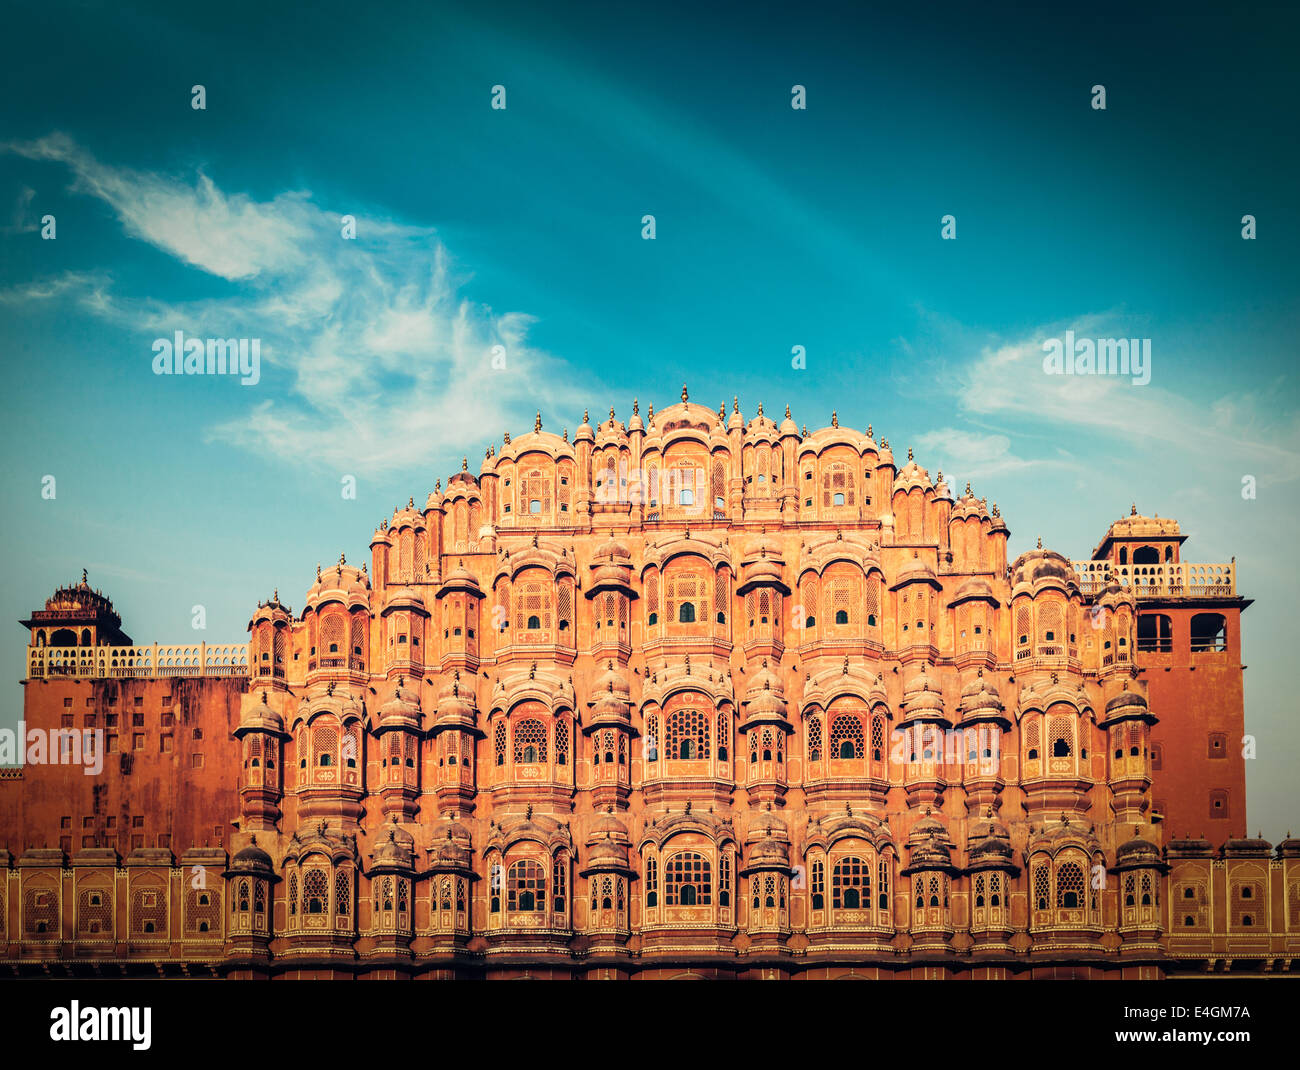 Vintage retrò hipster stile immagine di viaggio del Rajasthan famoso punto di riferimento - Hawa Mahal Palace (Palazzo dei venti), Jaipur Foto Stock